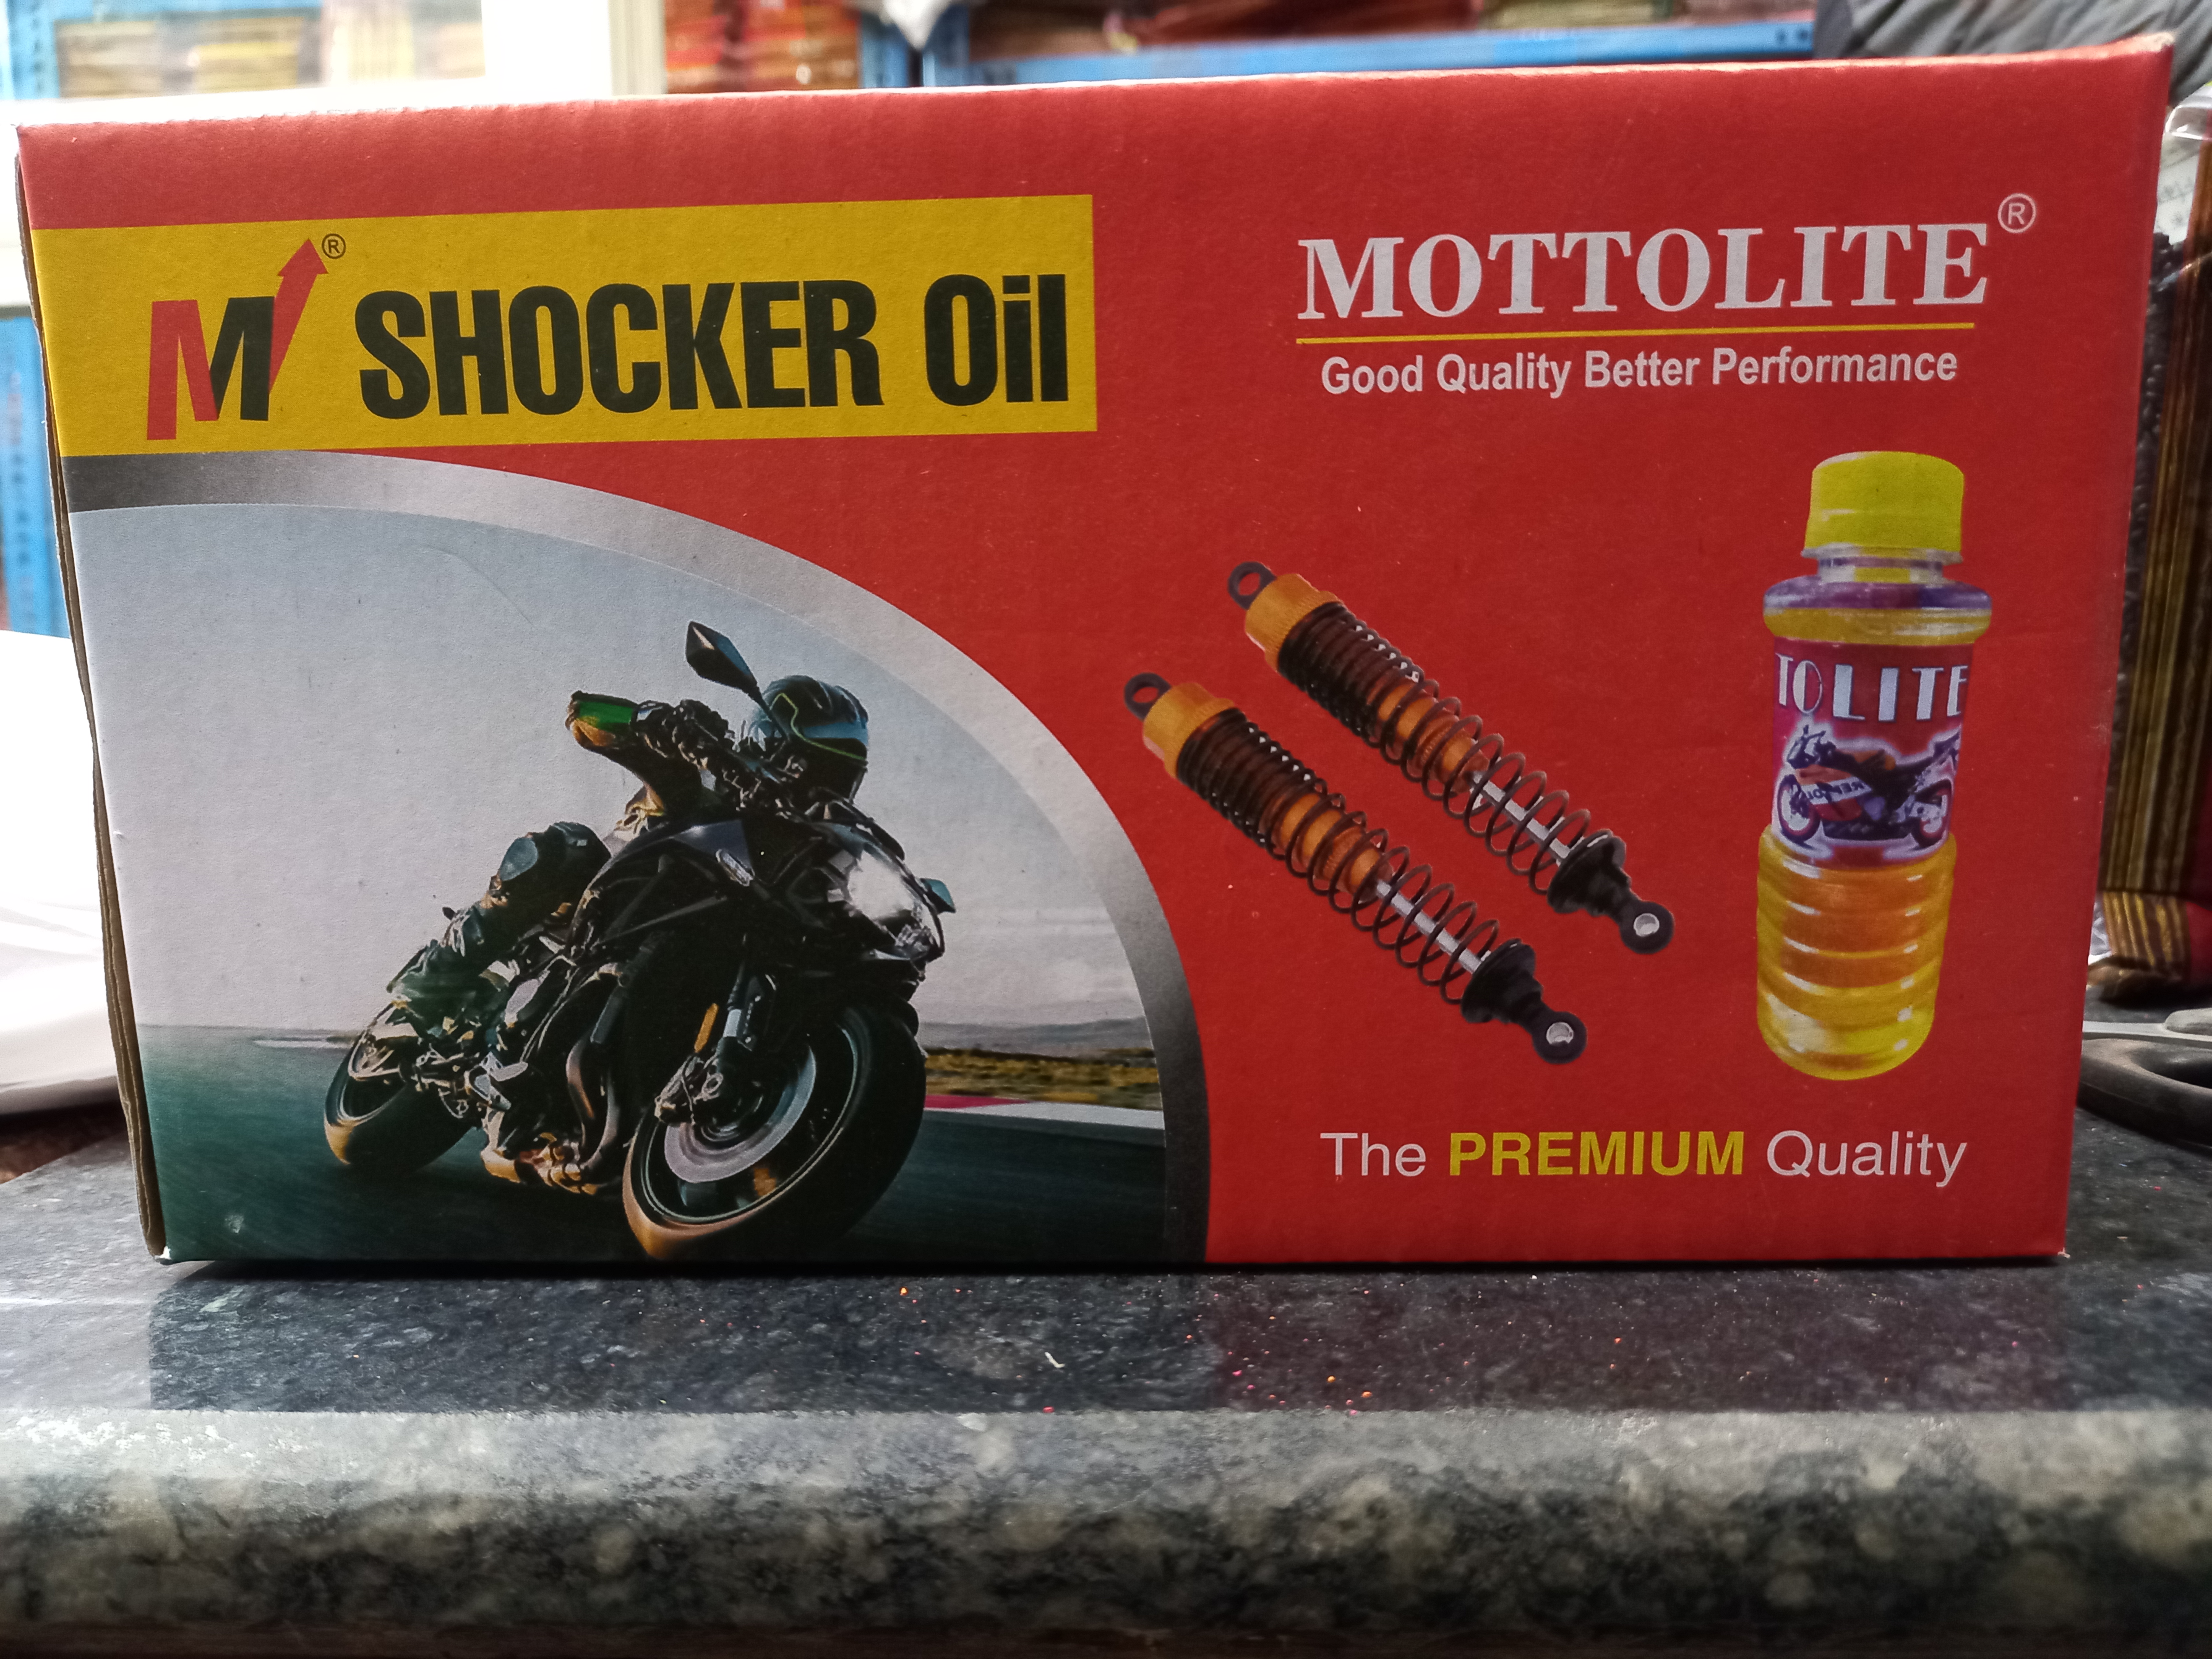 Post image Mottolite shocker oil